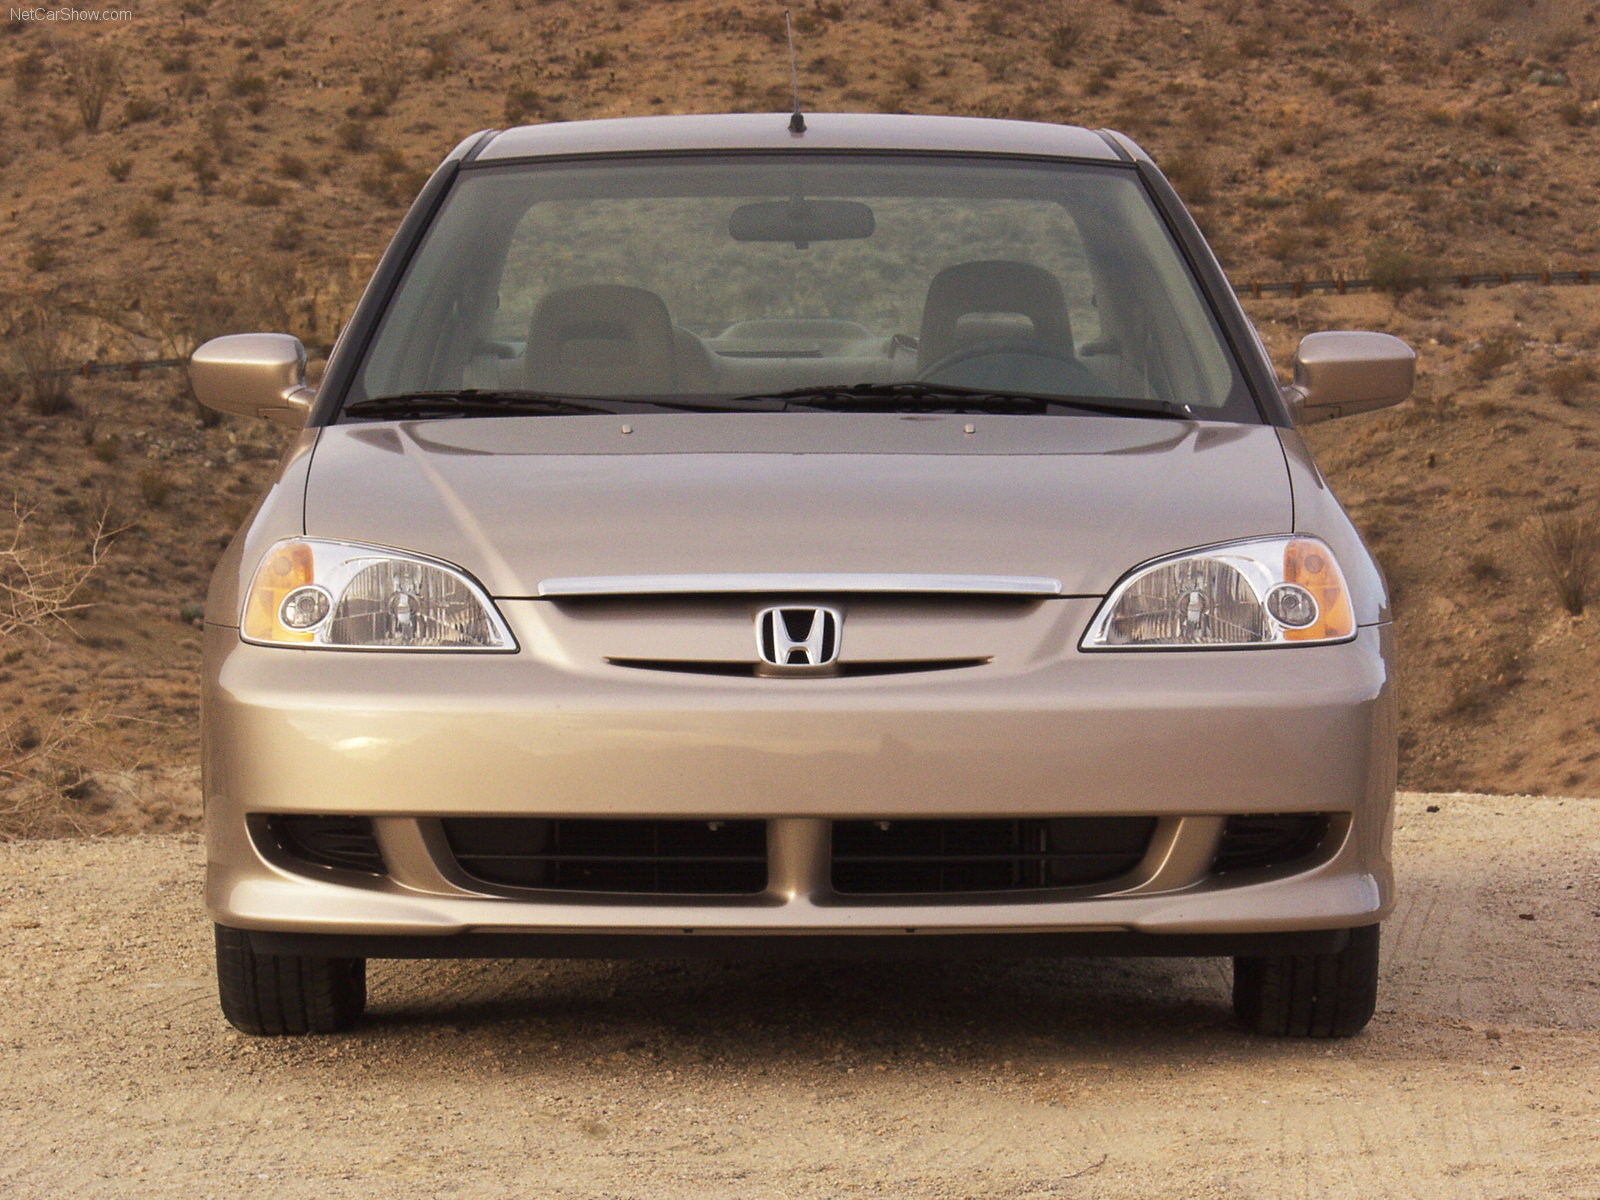 Honda Civic Hybrid 2003 Honda-Civic_Hybrid-2003-1600-18